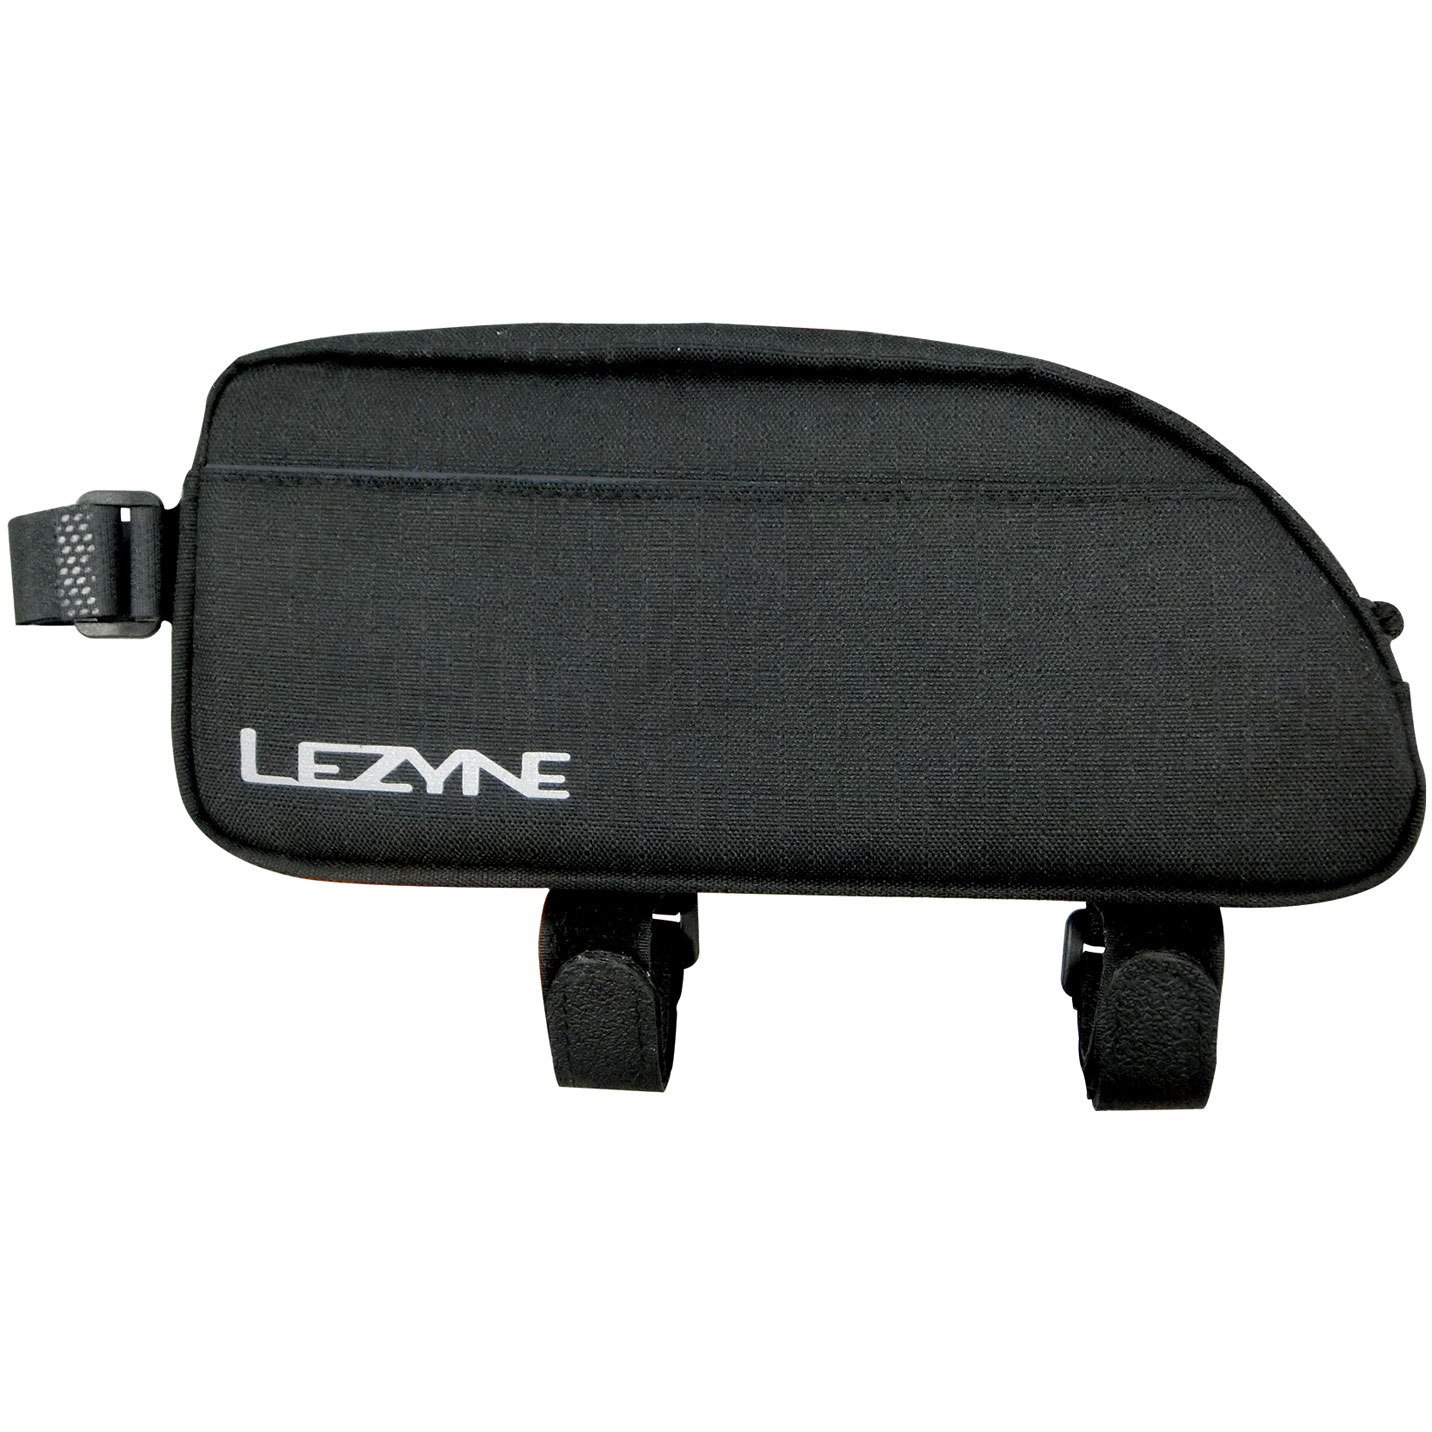 Productfoto van Lezyne Energy Caddy XL Frame Bag - black